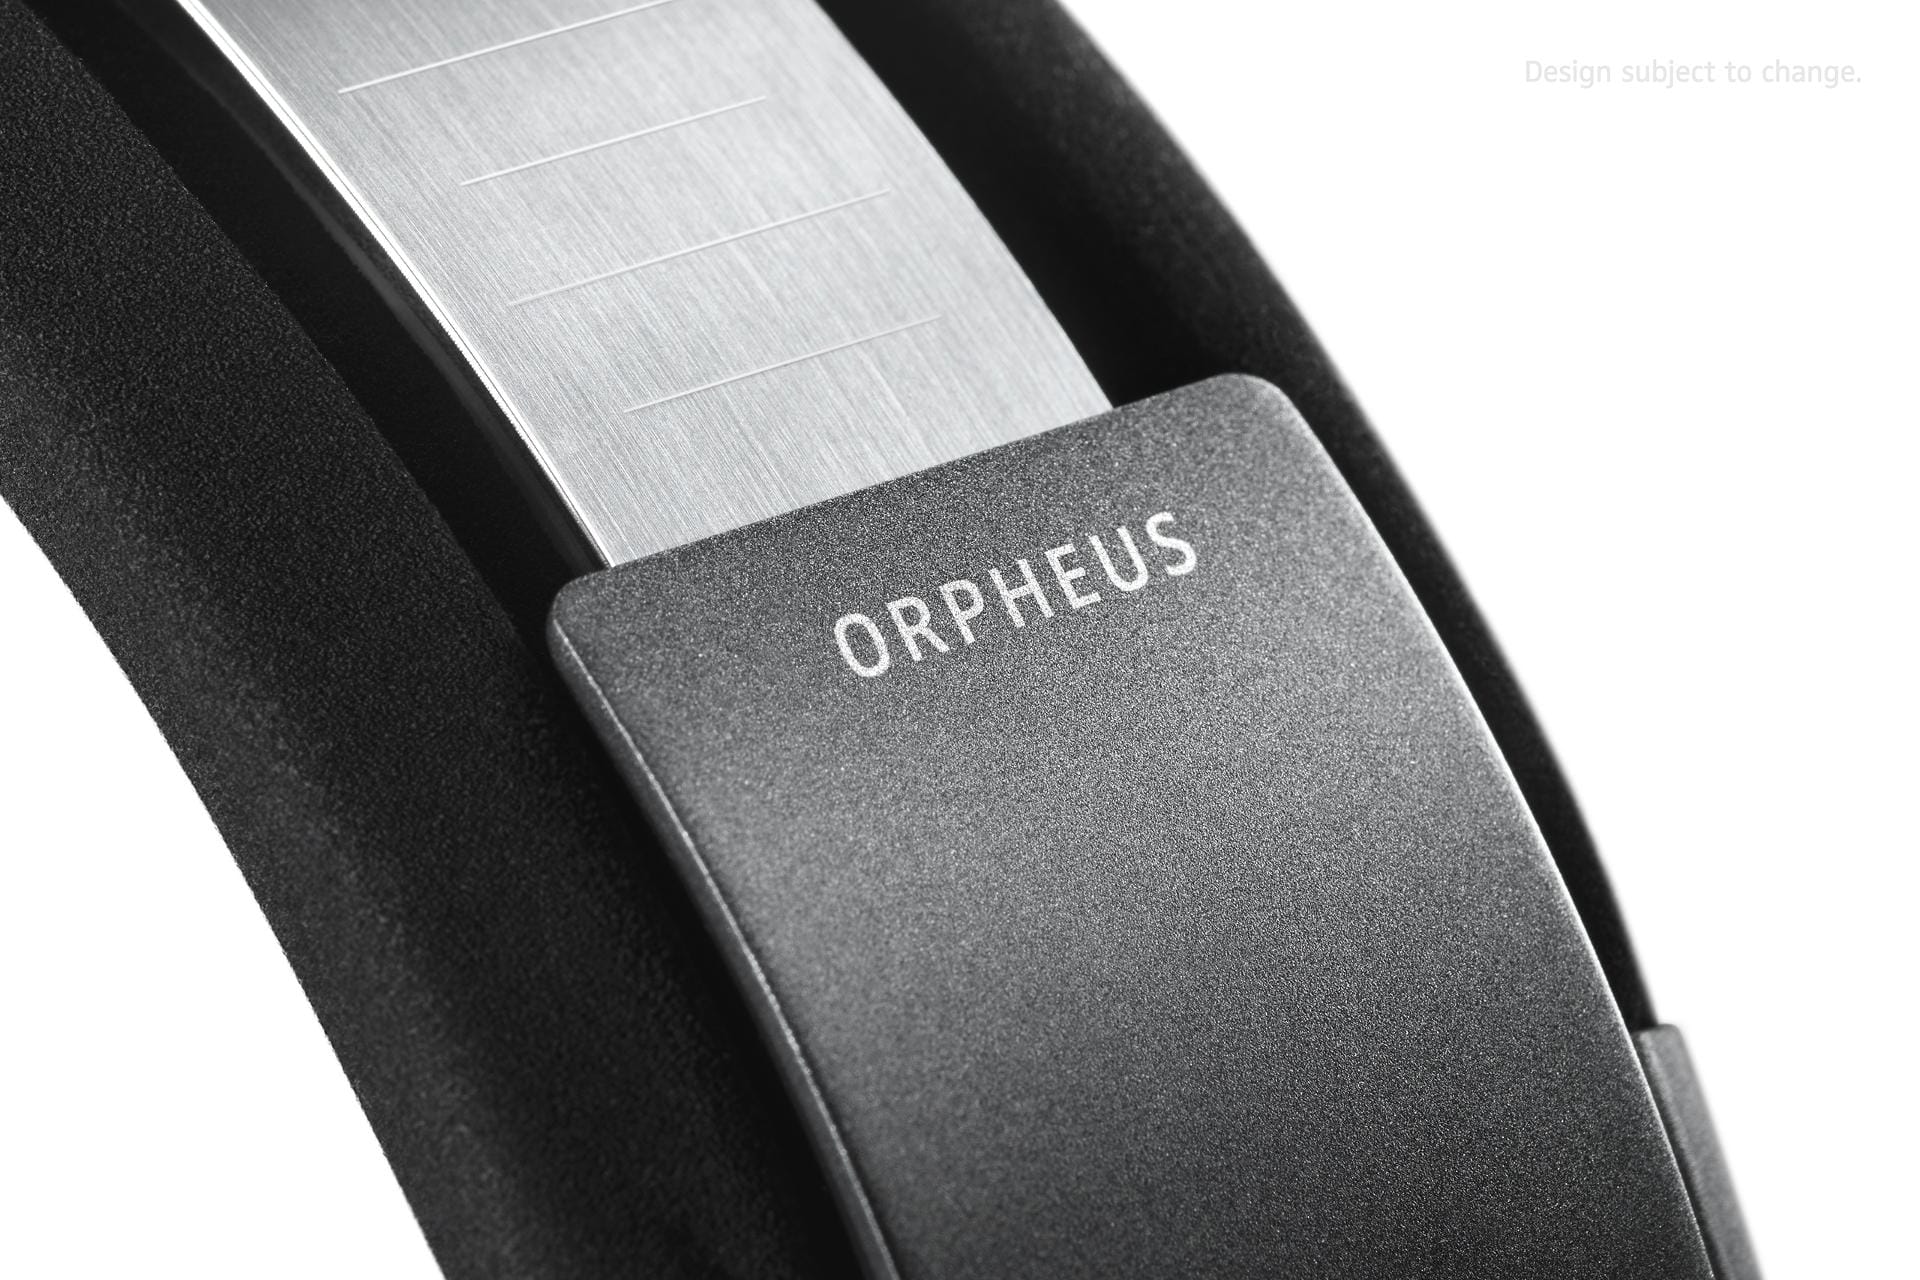 50.000 Euro soll die Kombination kosten. Der neue Orpheus ist dabei der Nachfolger des legendären Orpheus aus dem Jahr 1991, der damals 30.000 DM kostete.